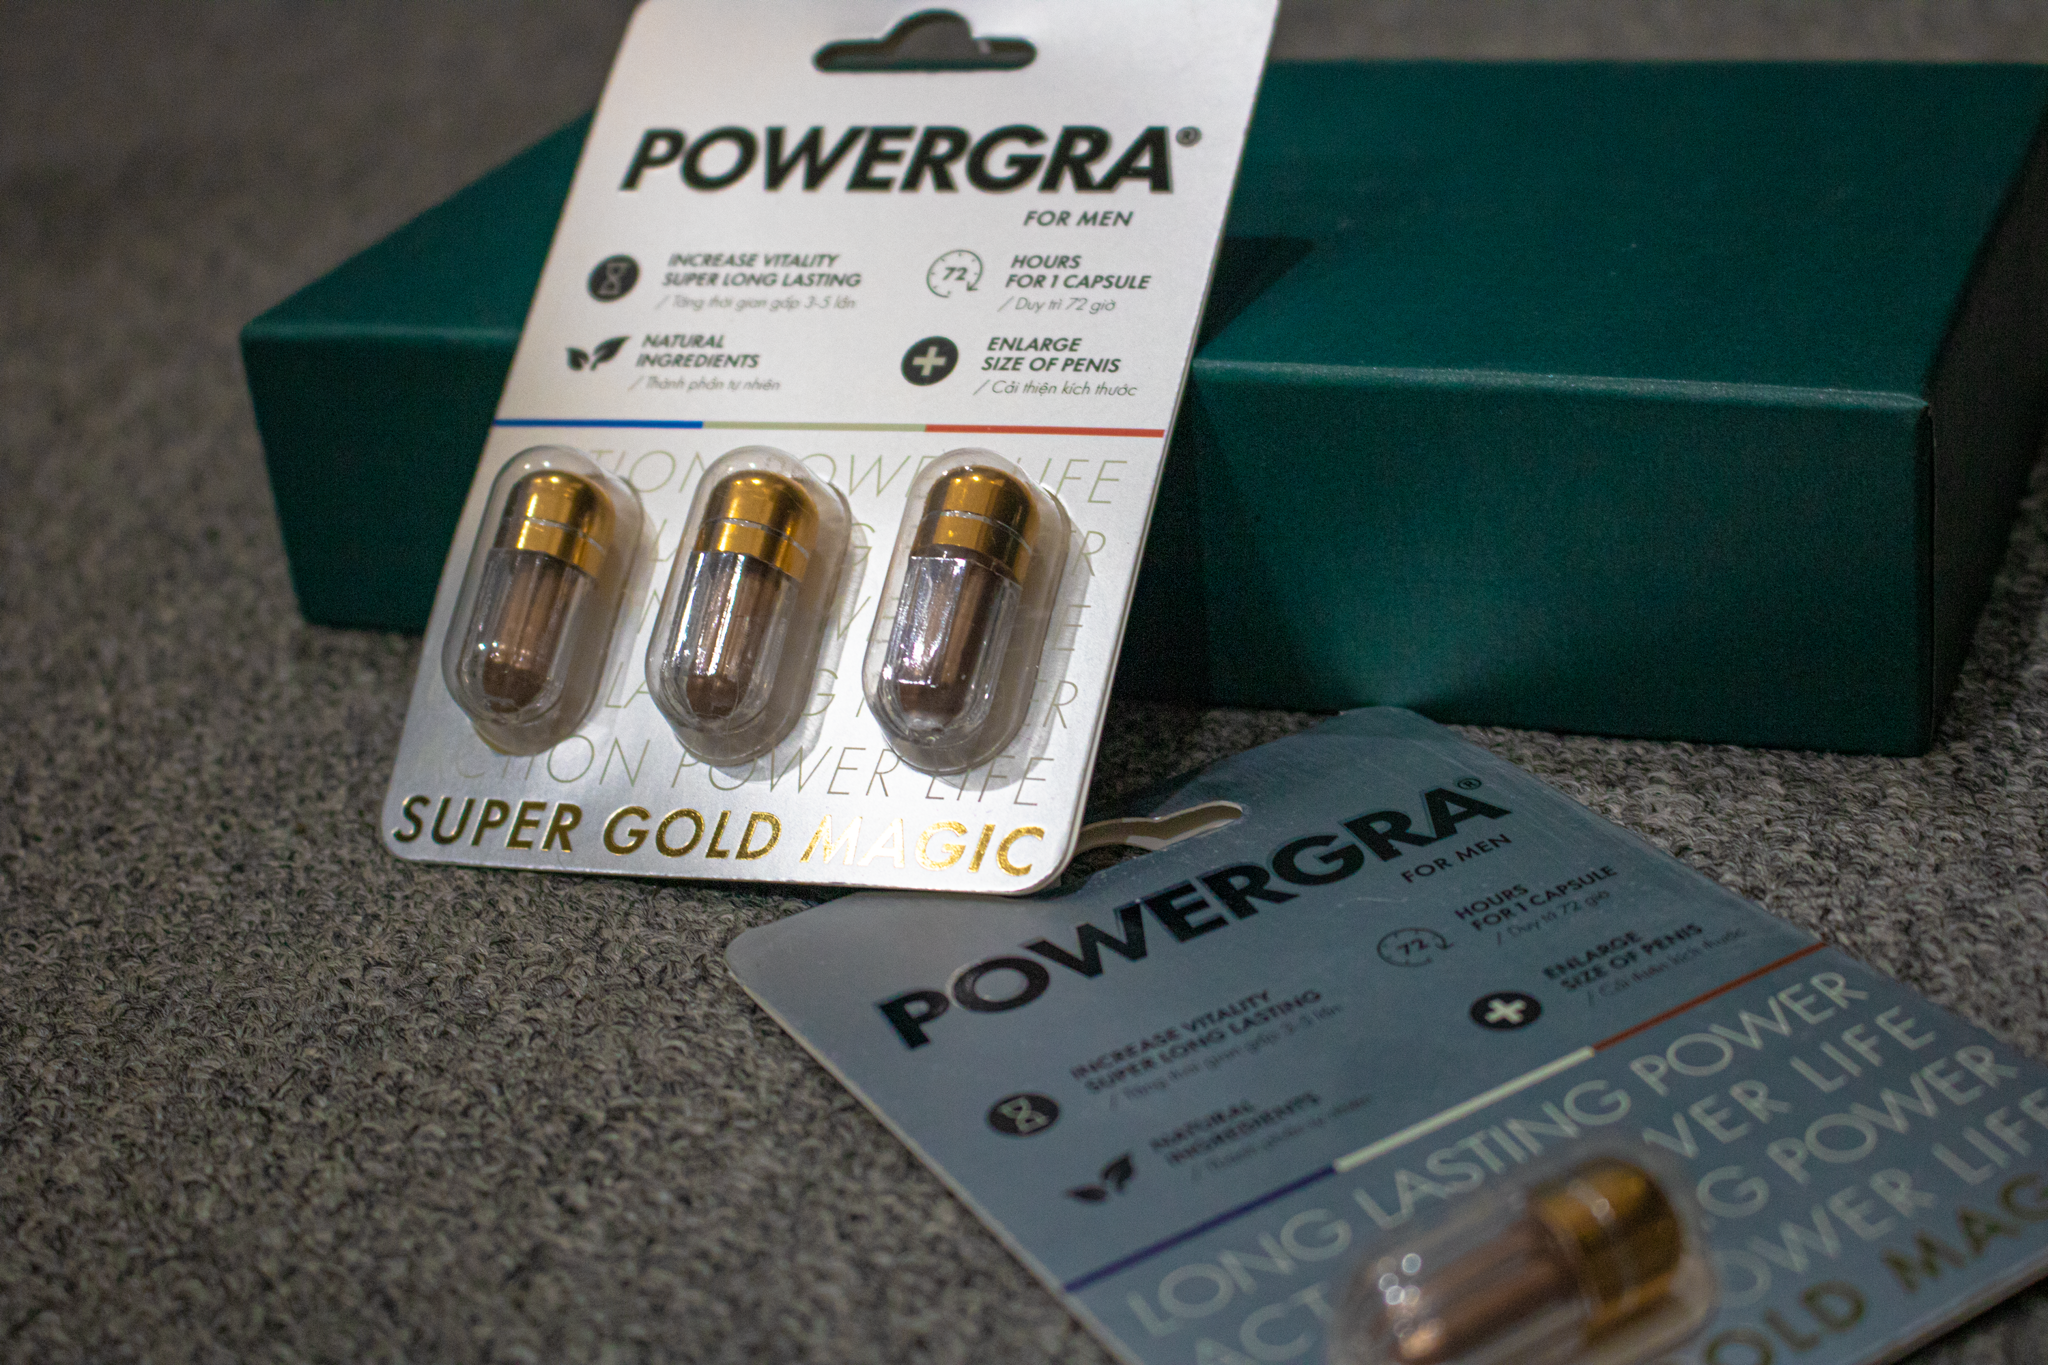 Viên uống tăng cường sinh lý nam giới Powergra (Super Gold Magic) - Vỉ 1 viên